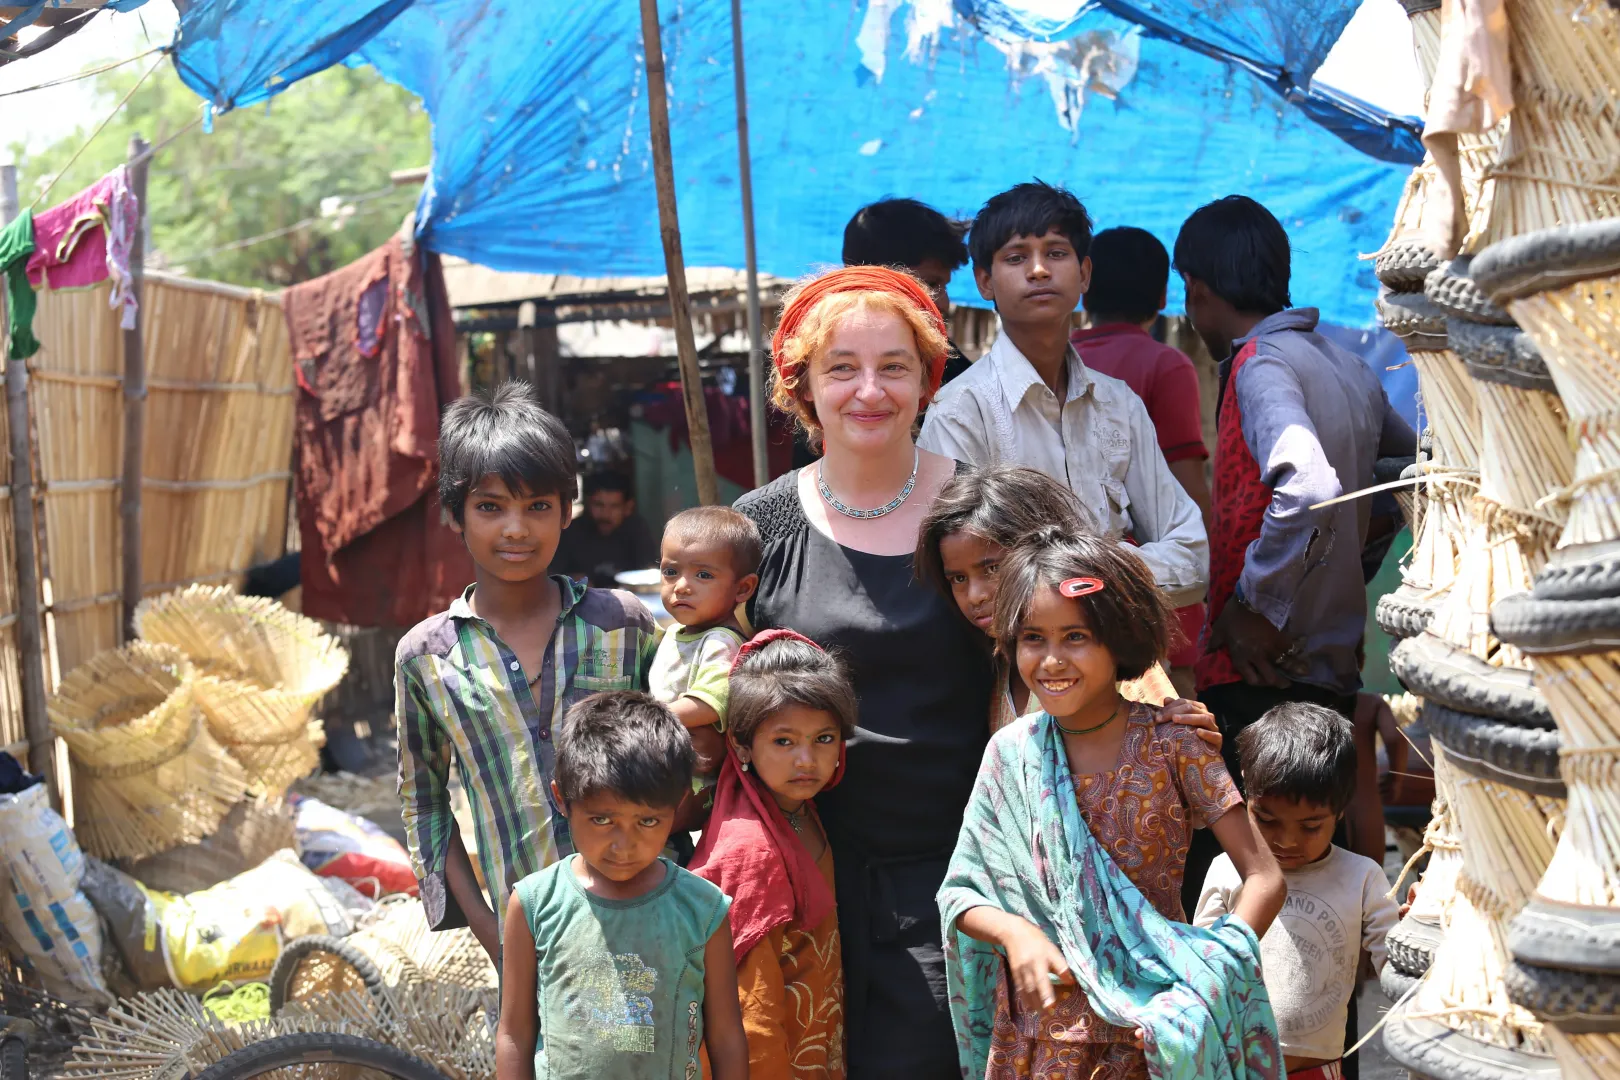 Jaipuri gyermekekkel. „Néha elgondolkodom, hol a boldogság…” – mondta a kép kapcsán a fotós – Fotó: Turós Margaréta